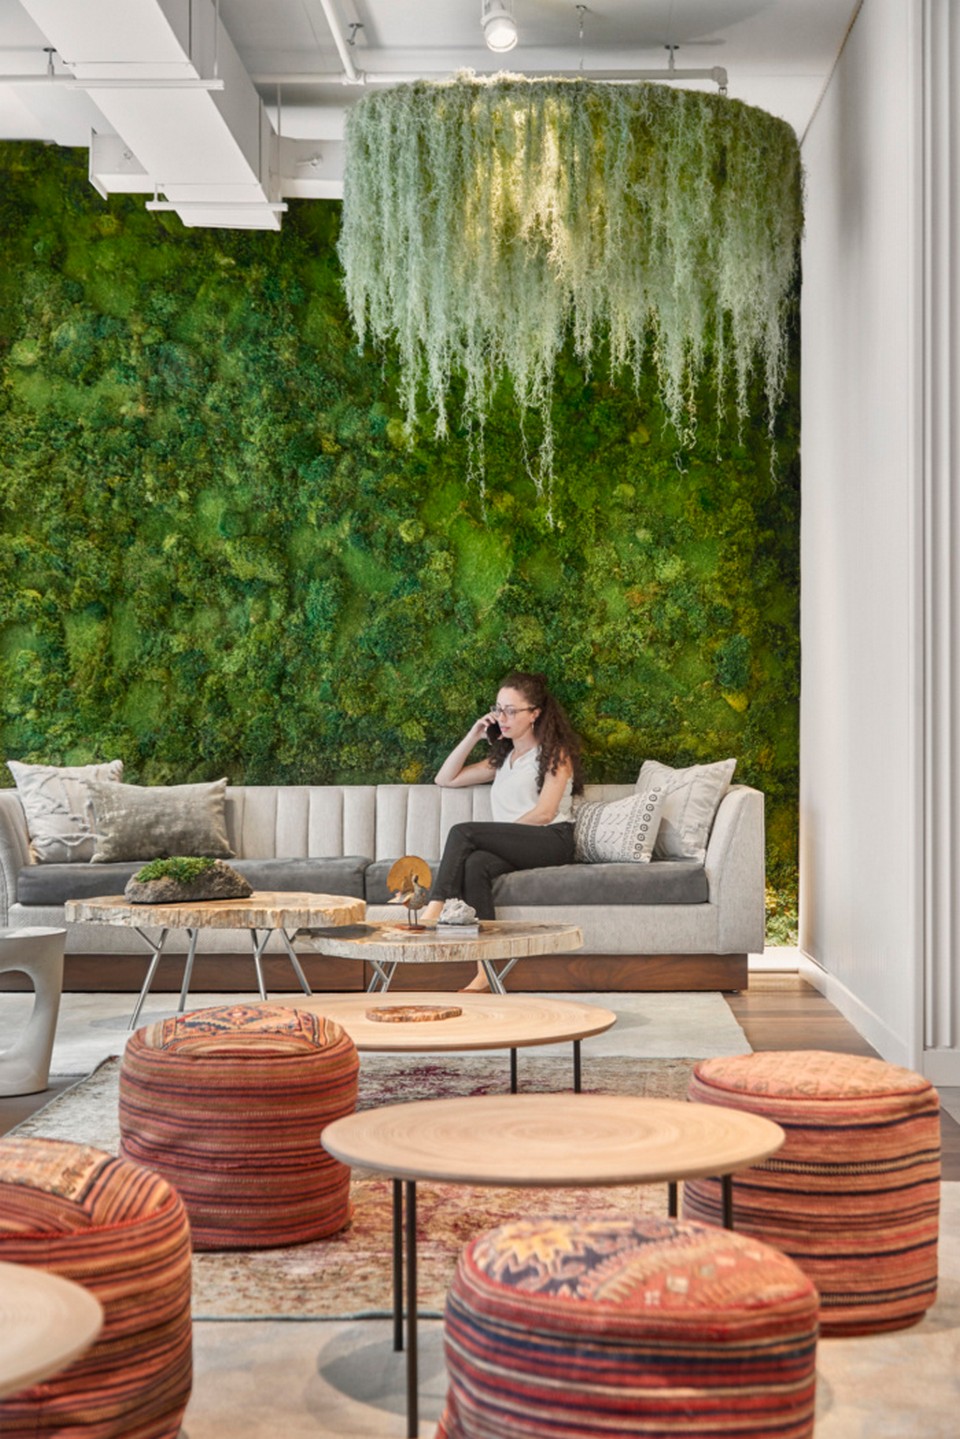 10+ mẫu thiết kế nội thất văn phòng đẹp sang trọng > phòng khách văn phòng làm việc phá cách với rất nhiều cây xanh